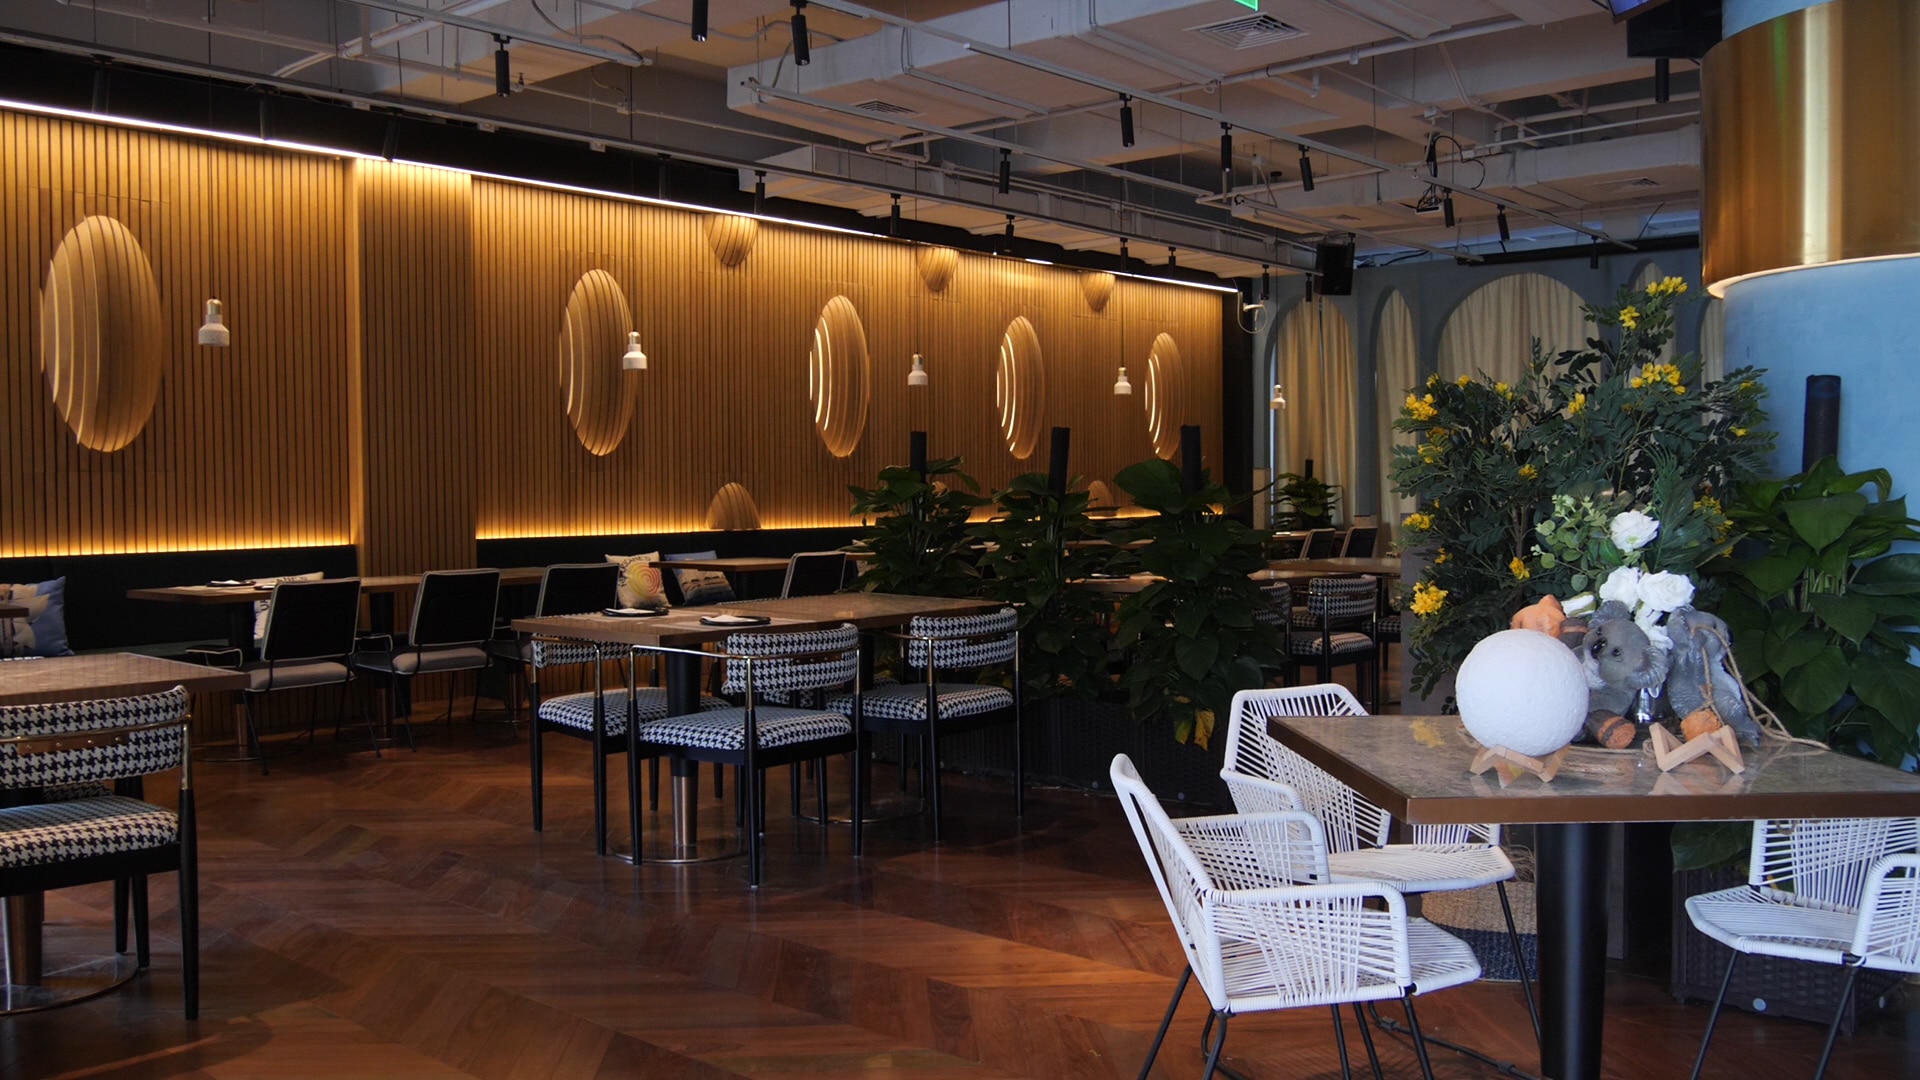 Hurricane Grill Beijing is based on the Bondi-born restaurant concept. 